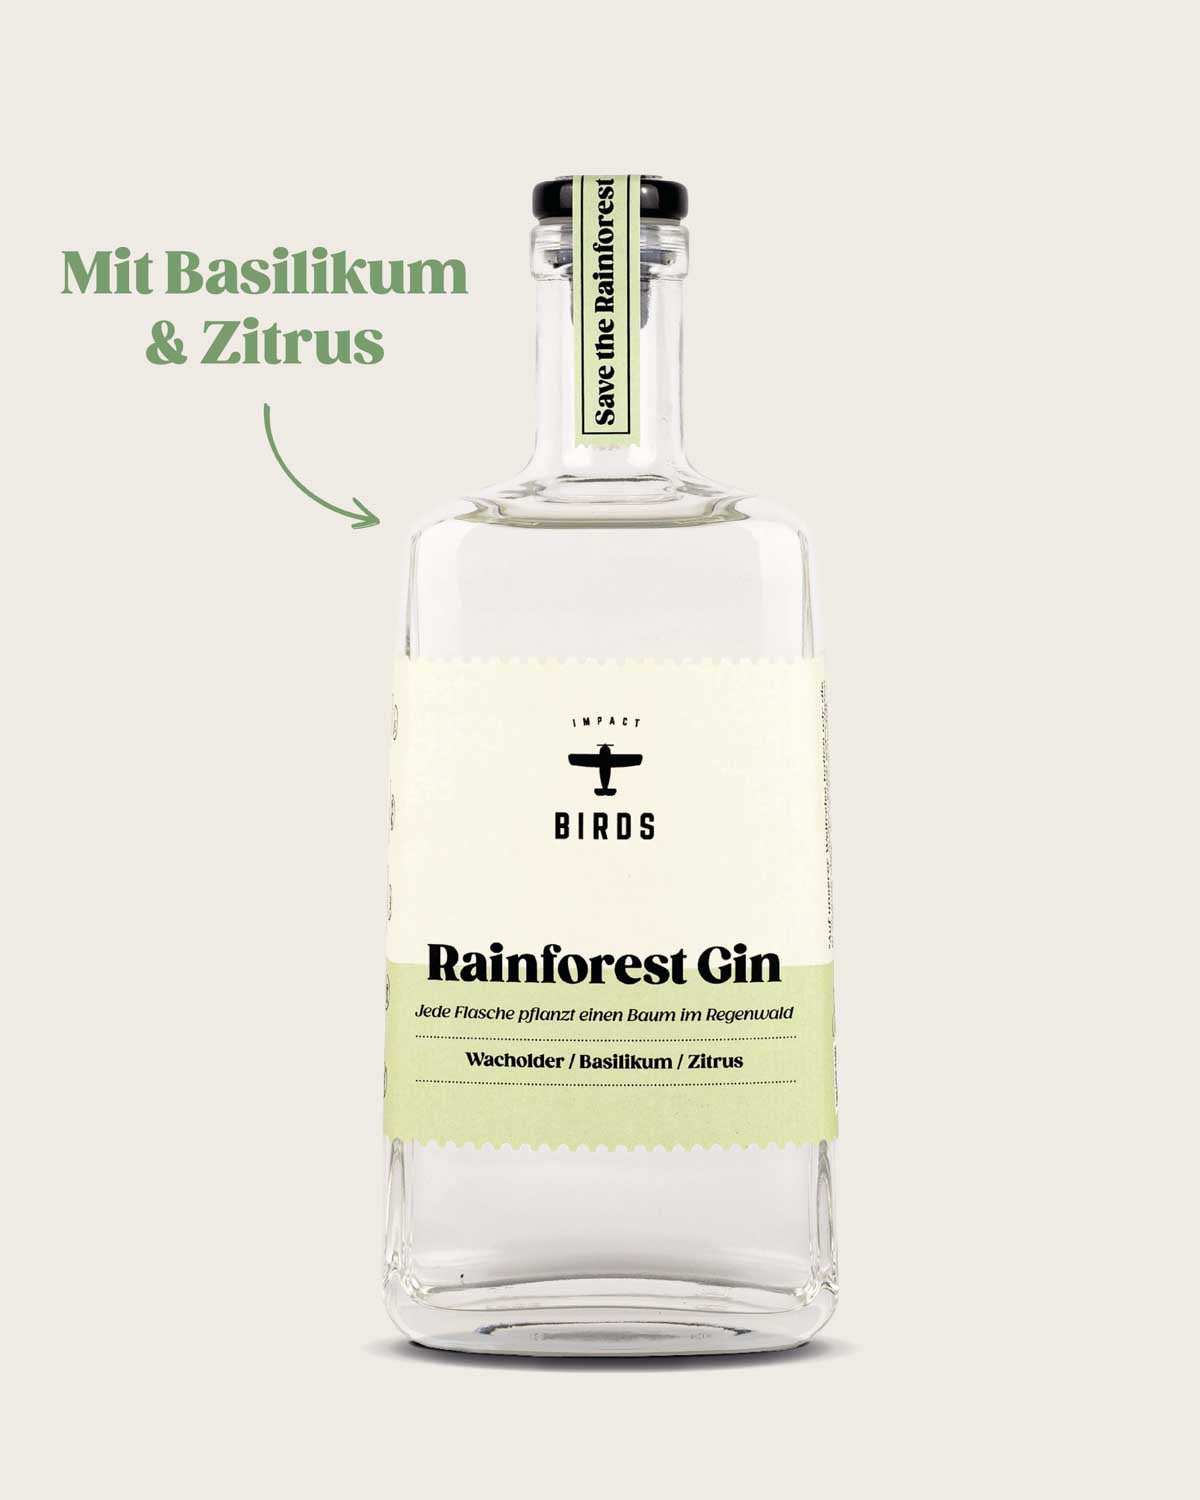 Der erfrischende klassische Rainforest Gin von BIRDS mit dem Geschmack von Basilikum und Zitrus.